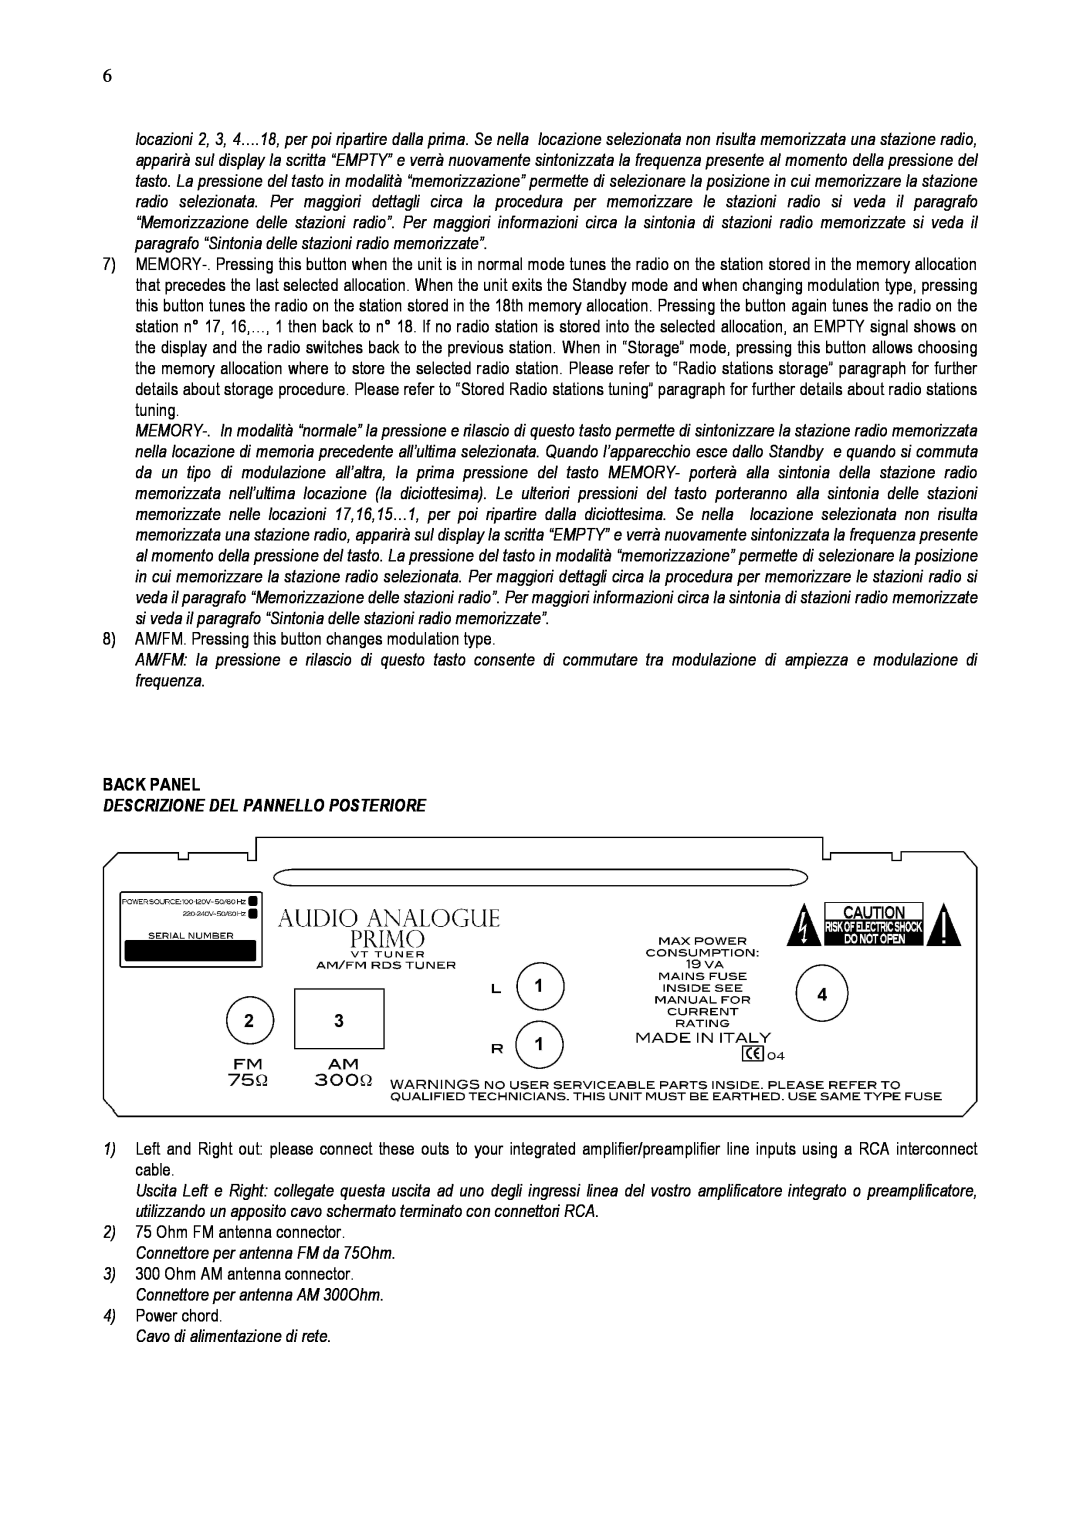 Audio Analogue SRL AM/FM RDS Vacuum Tube Tuner owner manual Back Panel, Descrizione Del Pannello Posteriore 